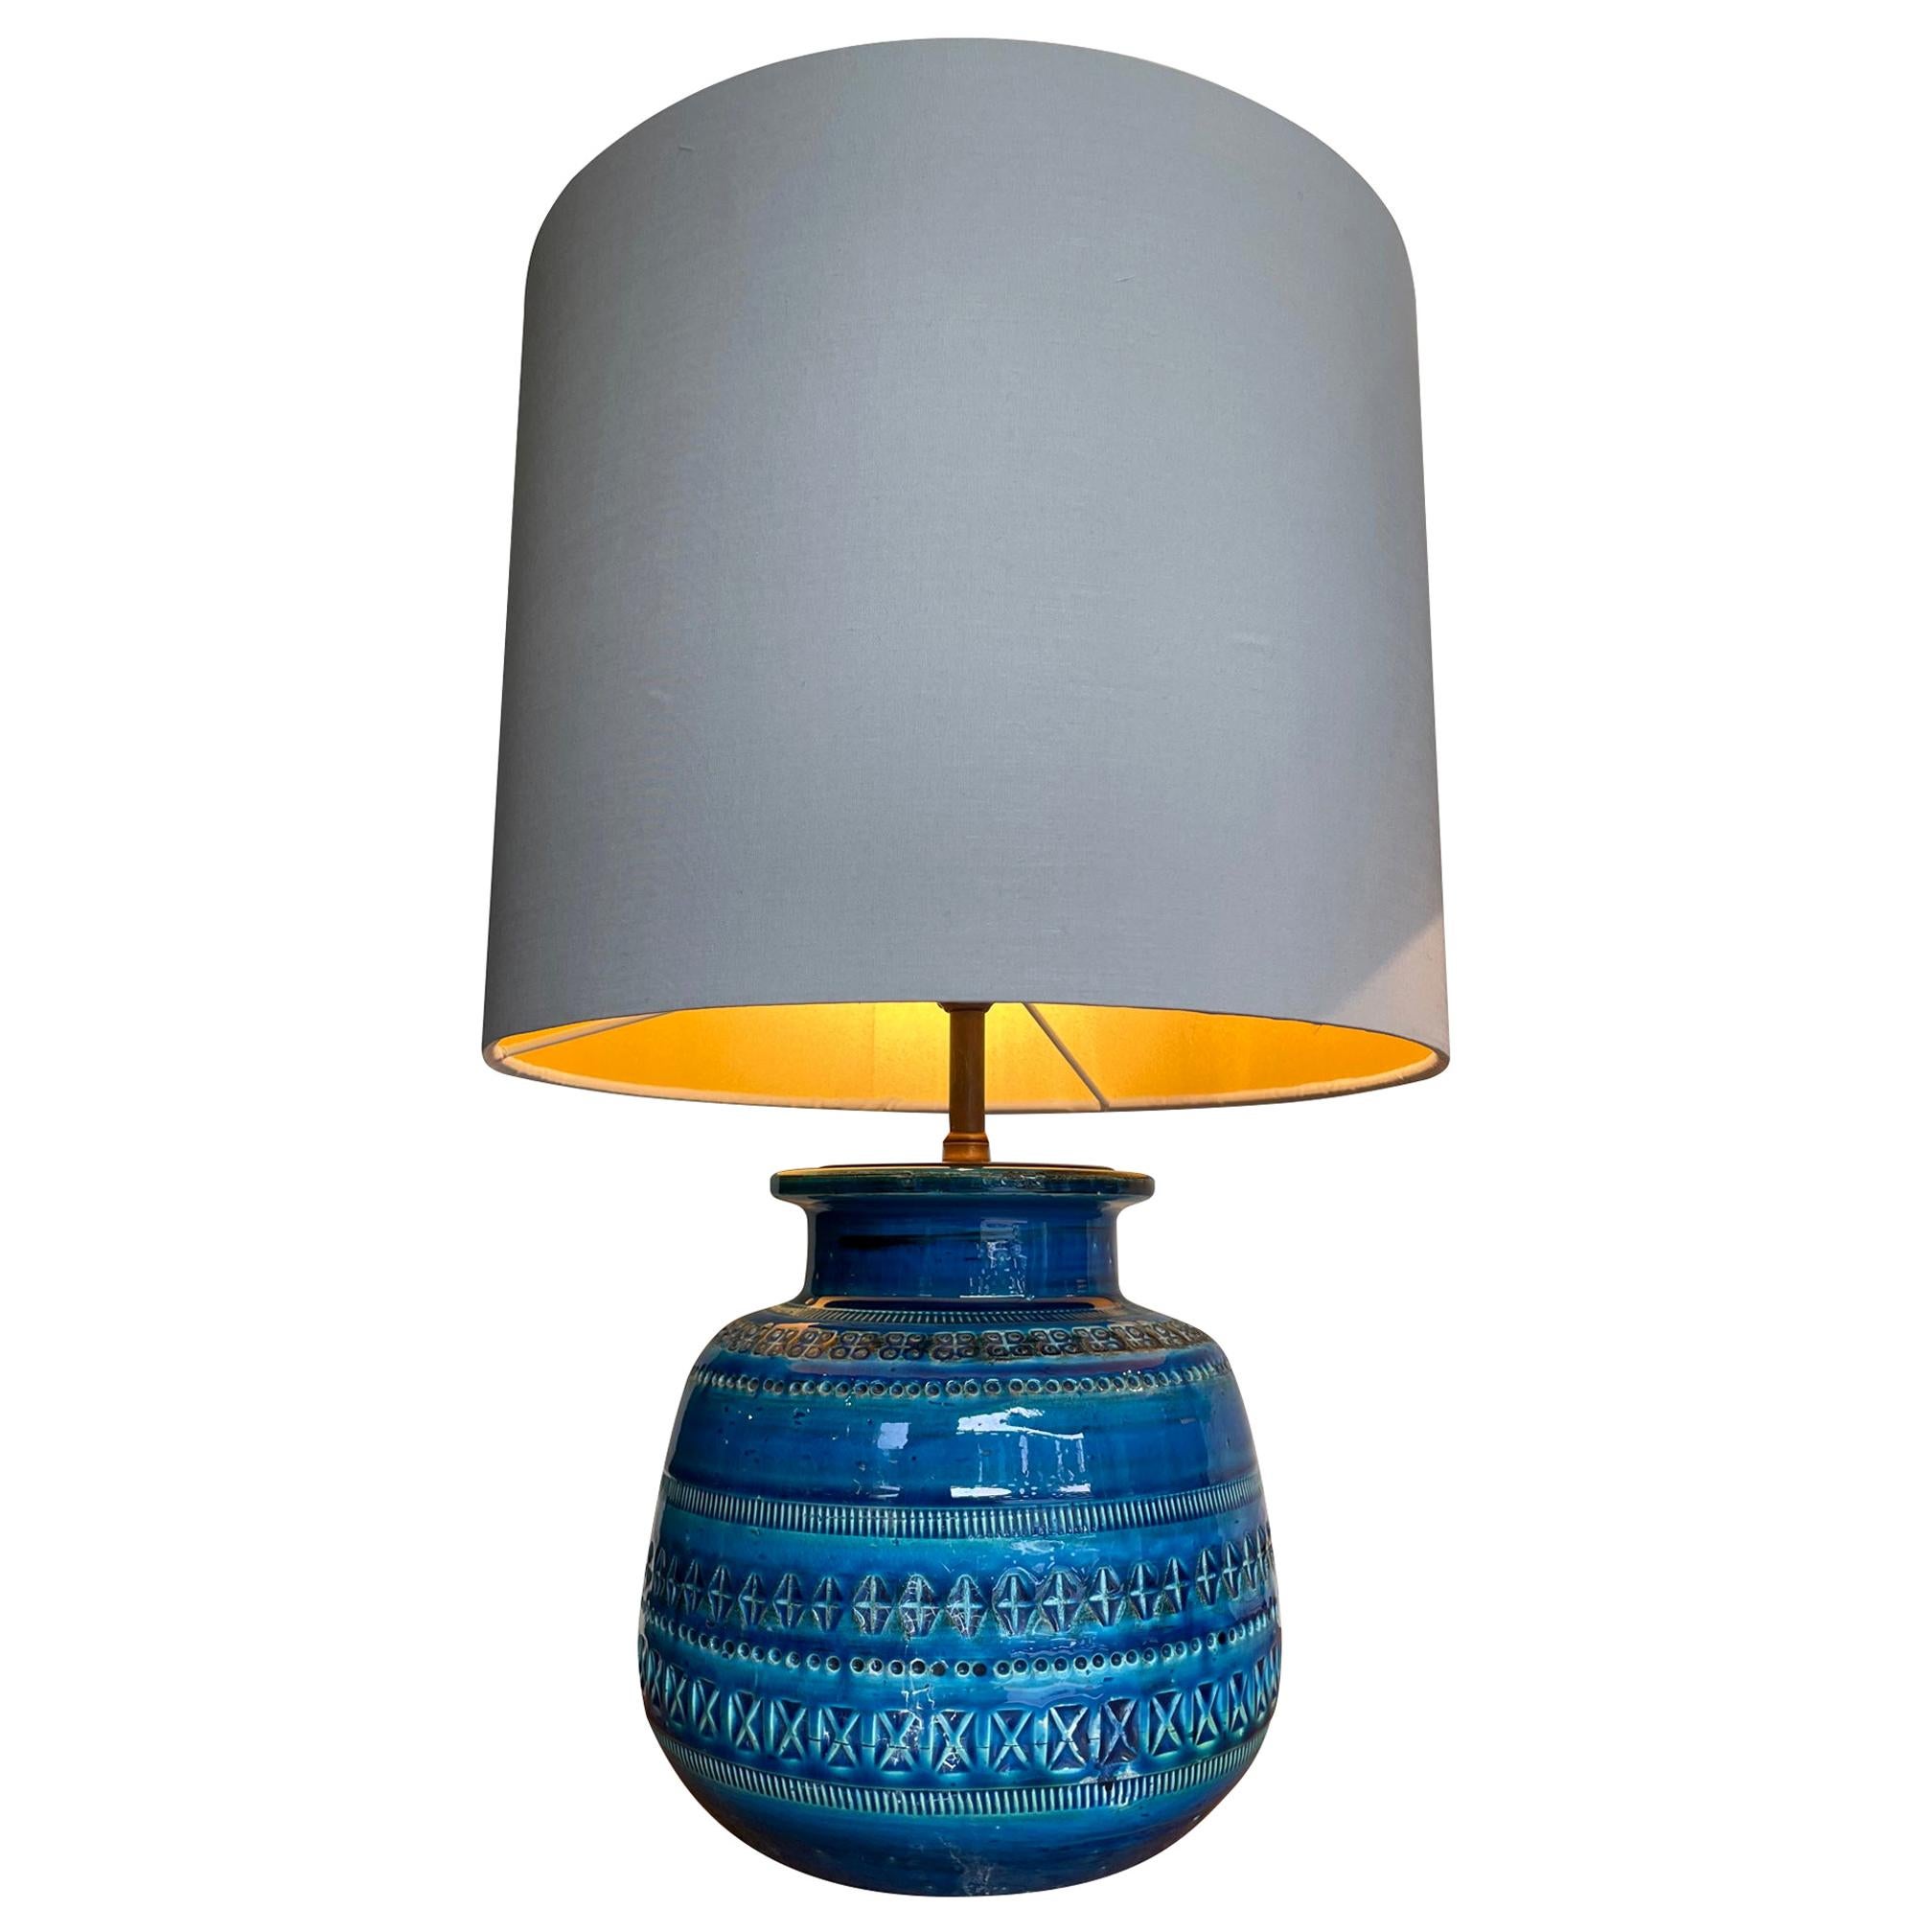 Lovely 1960s Bitossi Ceramic Lamp by Aldo Londi in Famous "Rimini Blue"